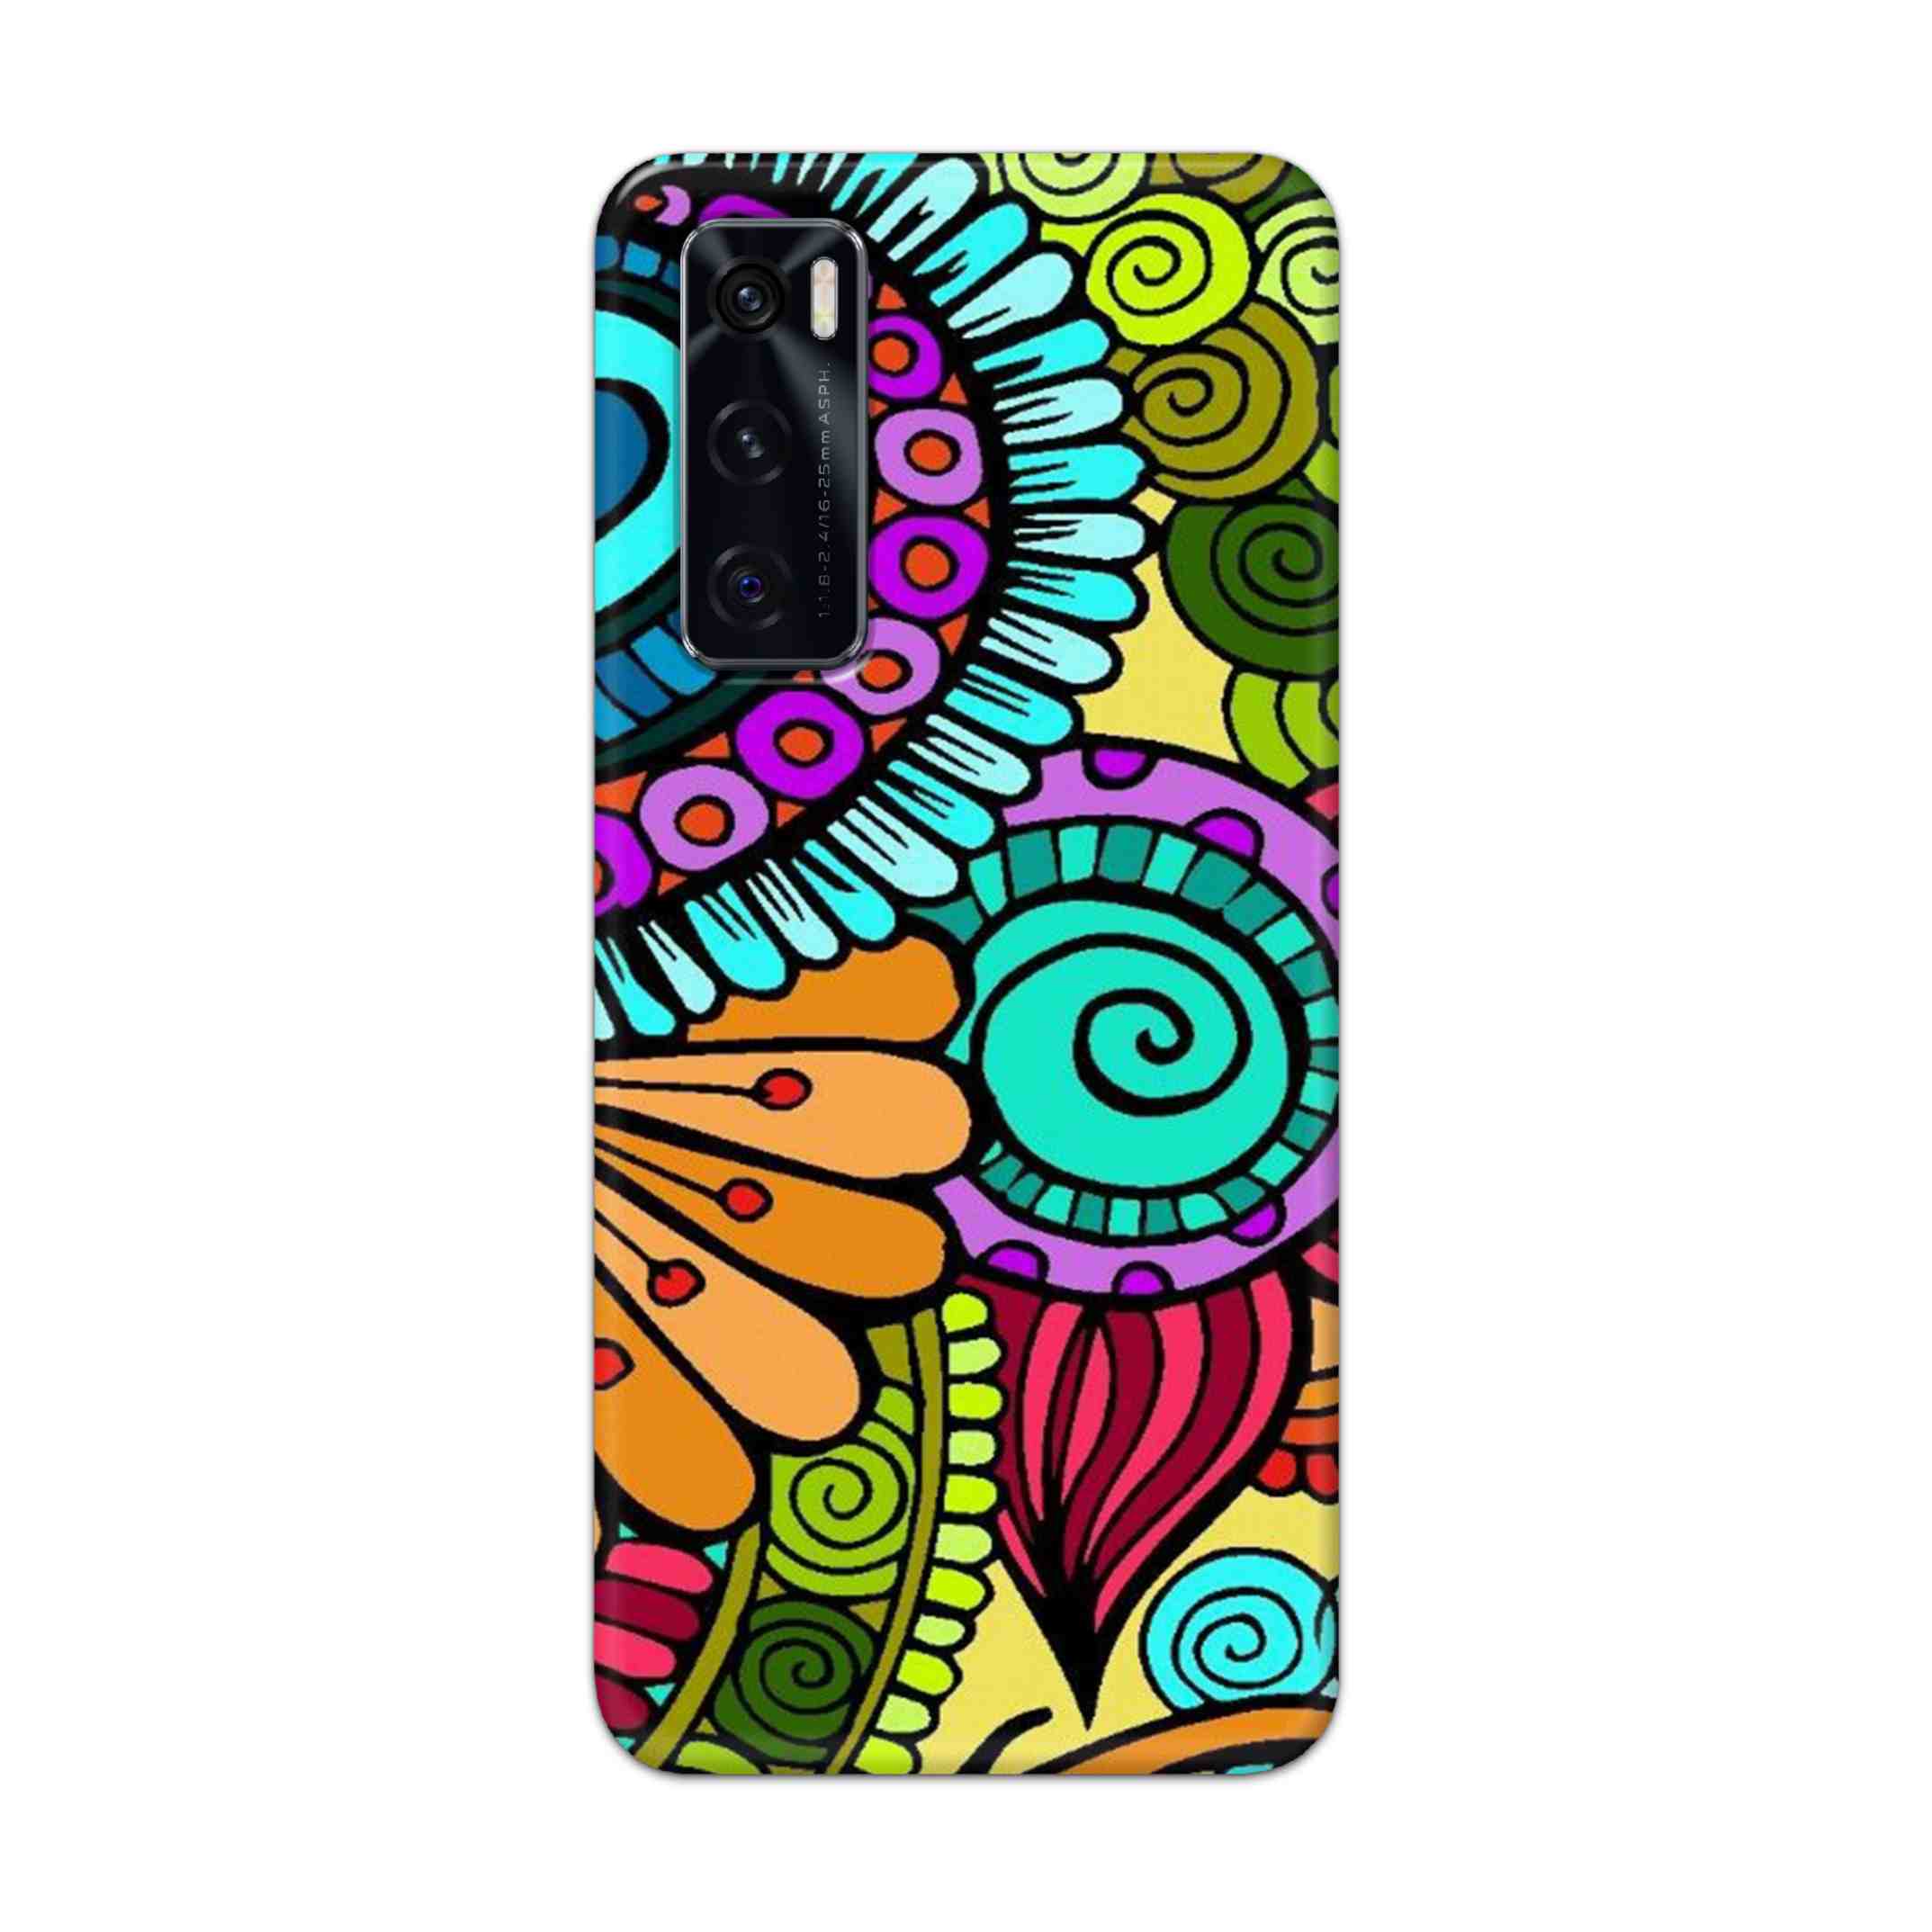 Buy The Kalachakra Mandala Hard Back Mobile Phone Case Cover For Vivo V20 SE Online